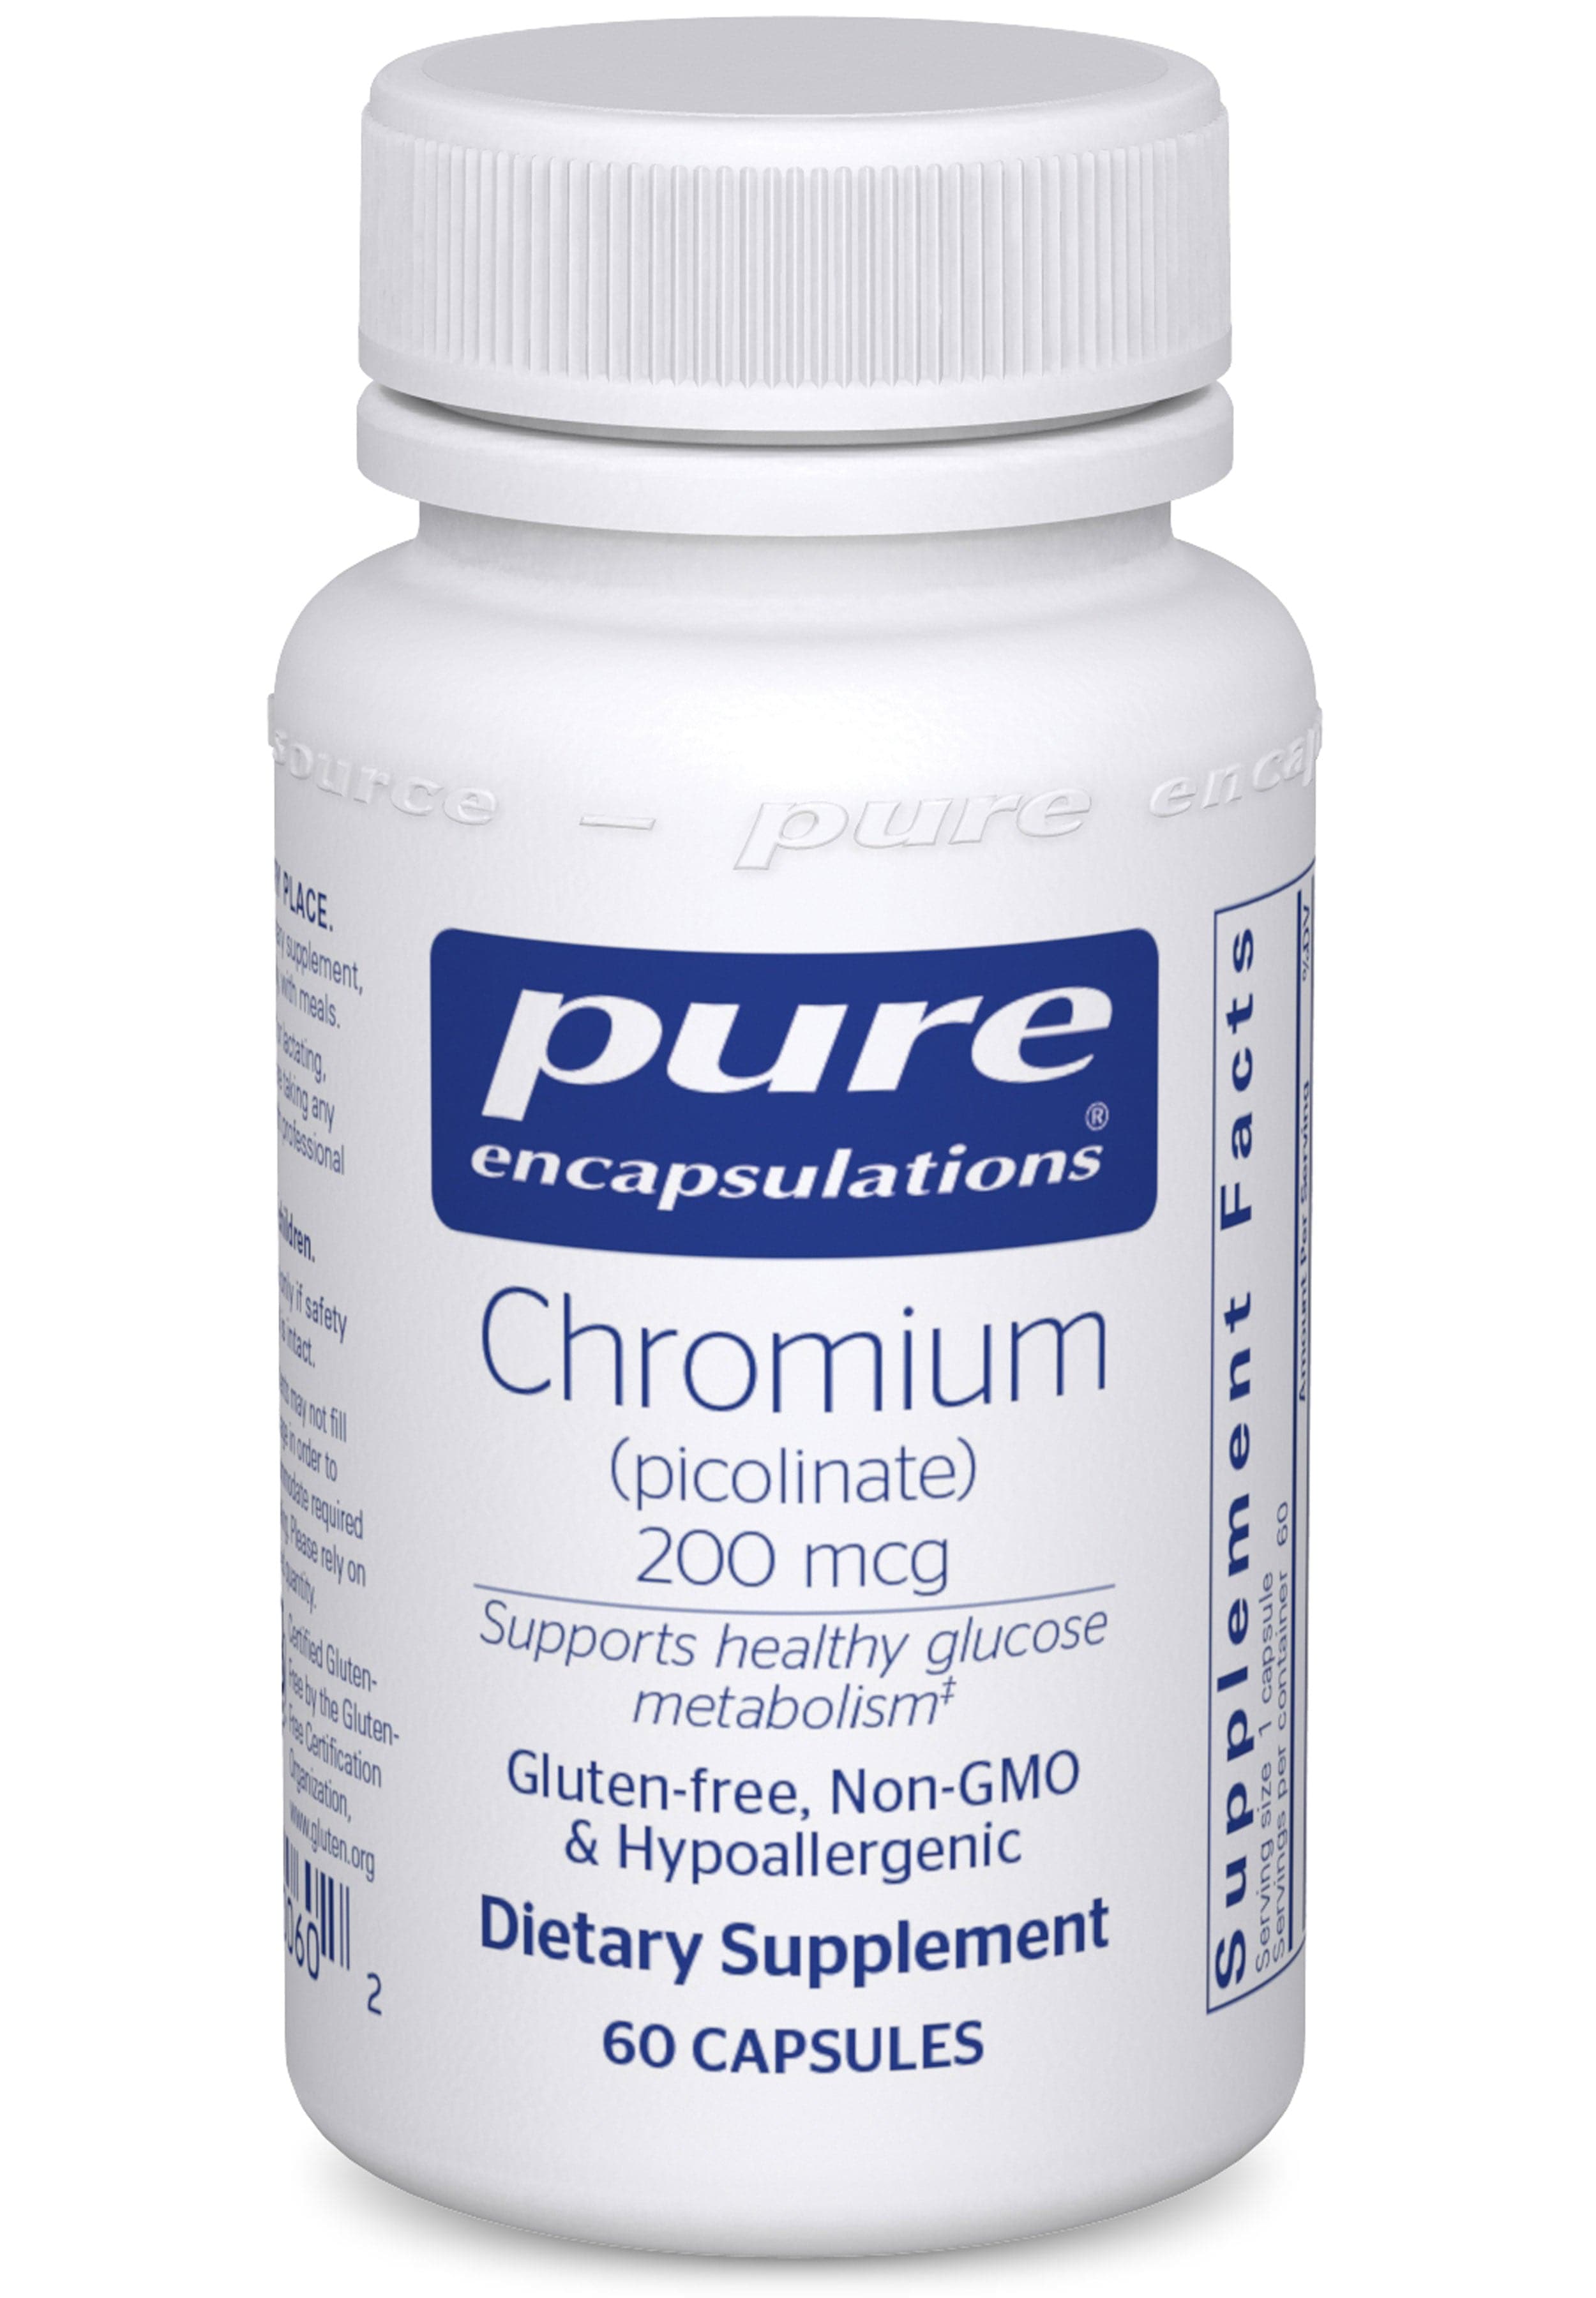 Pure Encapsulations Chromium (picolinate) 200mcg